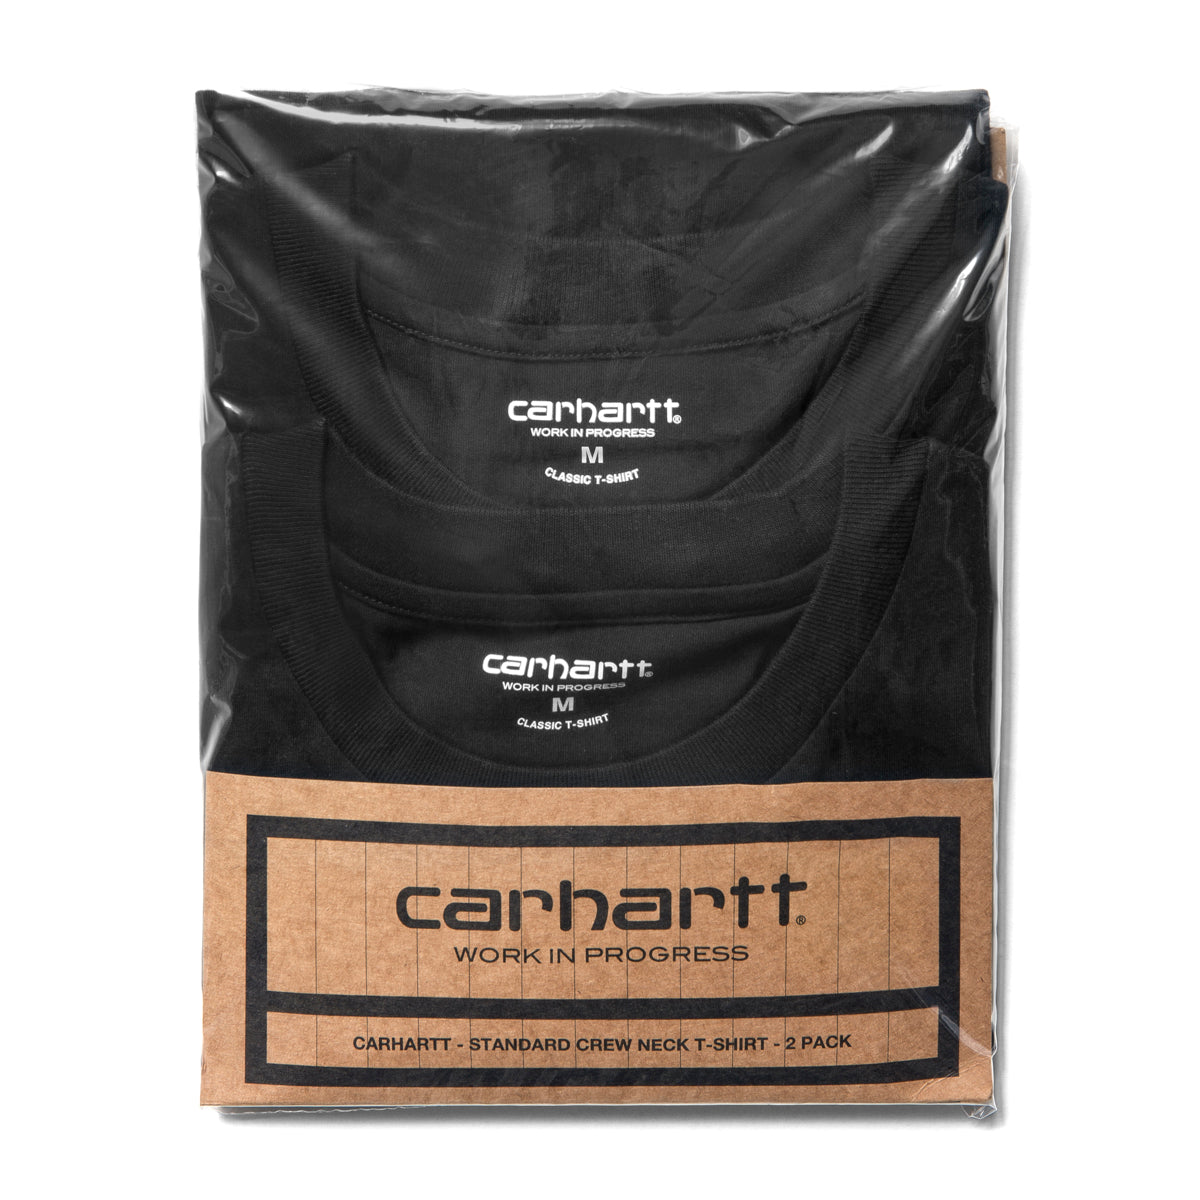 Carhartt Black T-shirt (2 pack) Standard Crew Neck